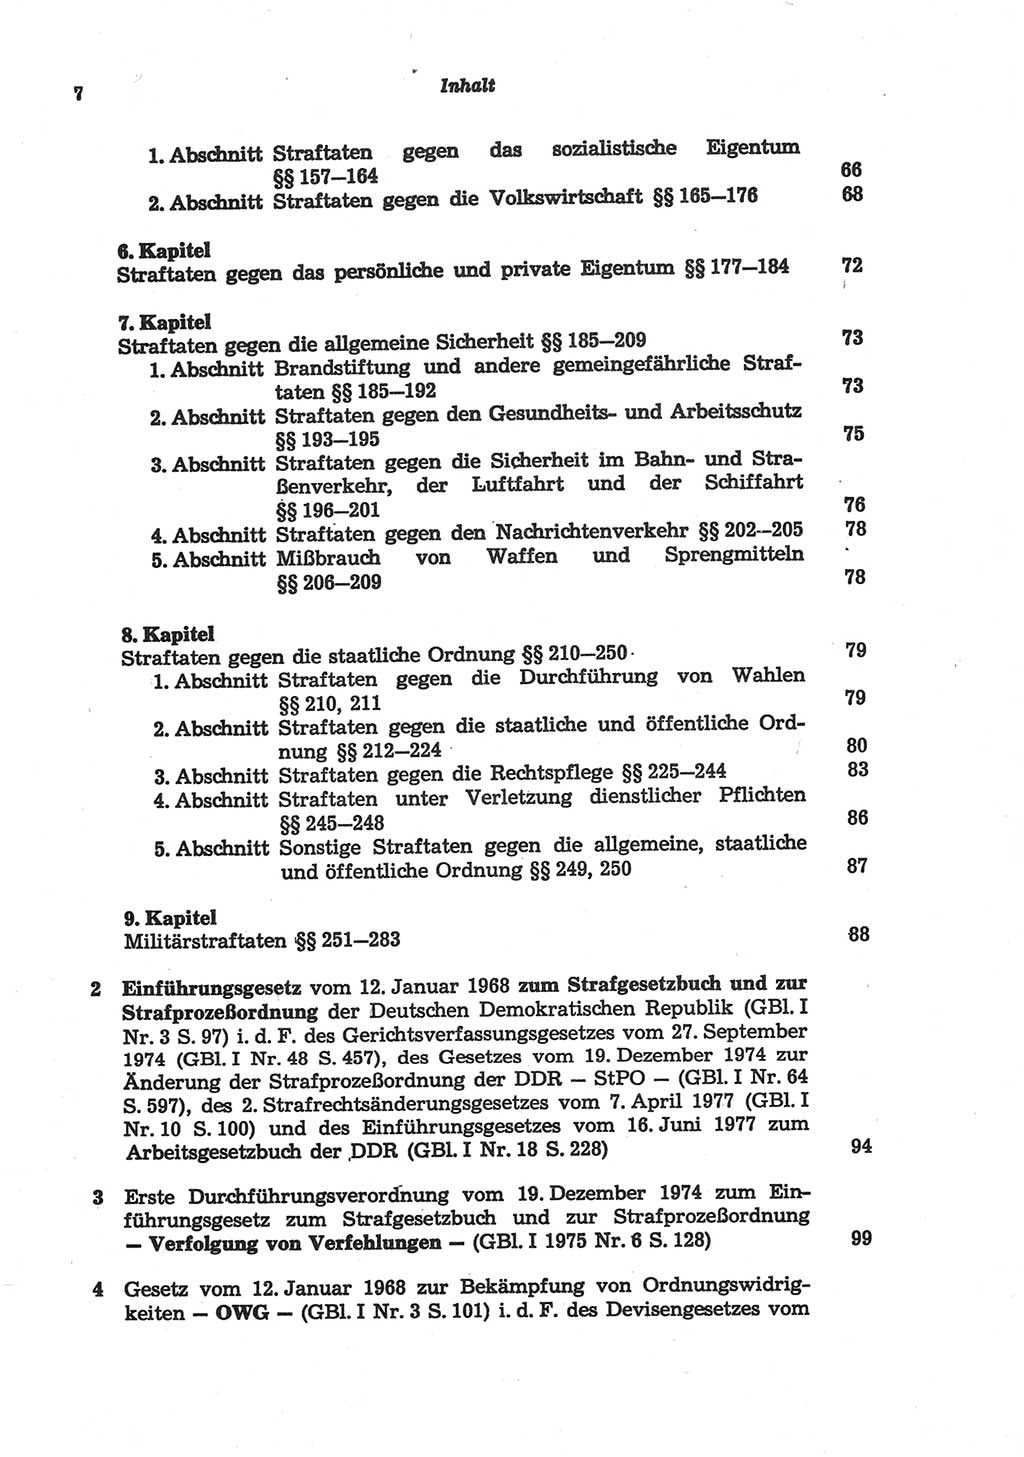 Strafgesetzbuch (StGB) der Deutschen Demokratischen Republik (DDR) und angrenzende Gesetze und Bestimmungen 1977, Seite 7 (StGB DDR Ges. Best. 1977, S. 7)